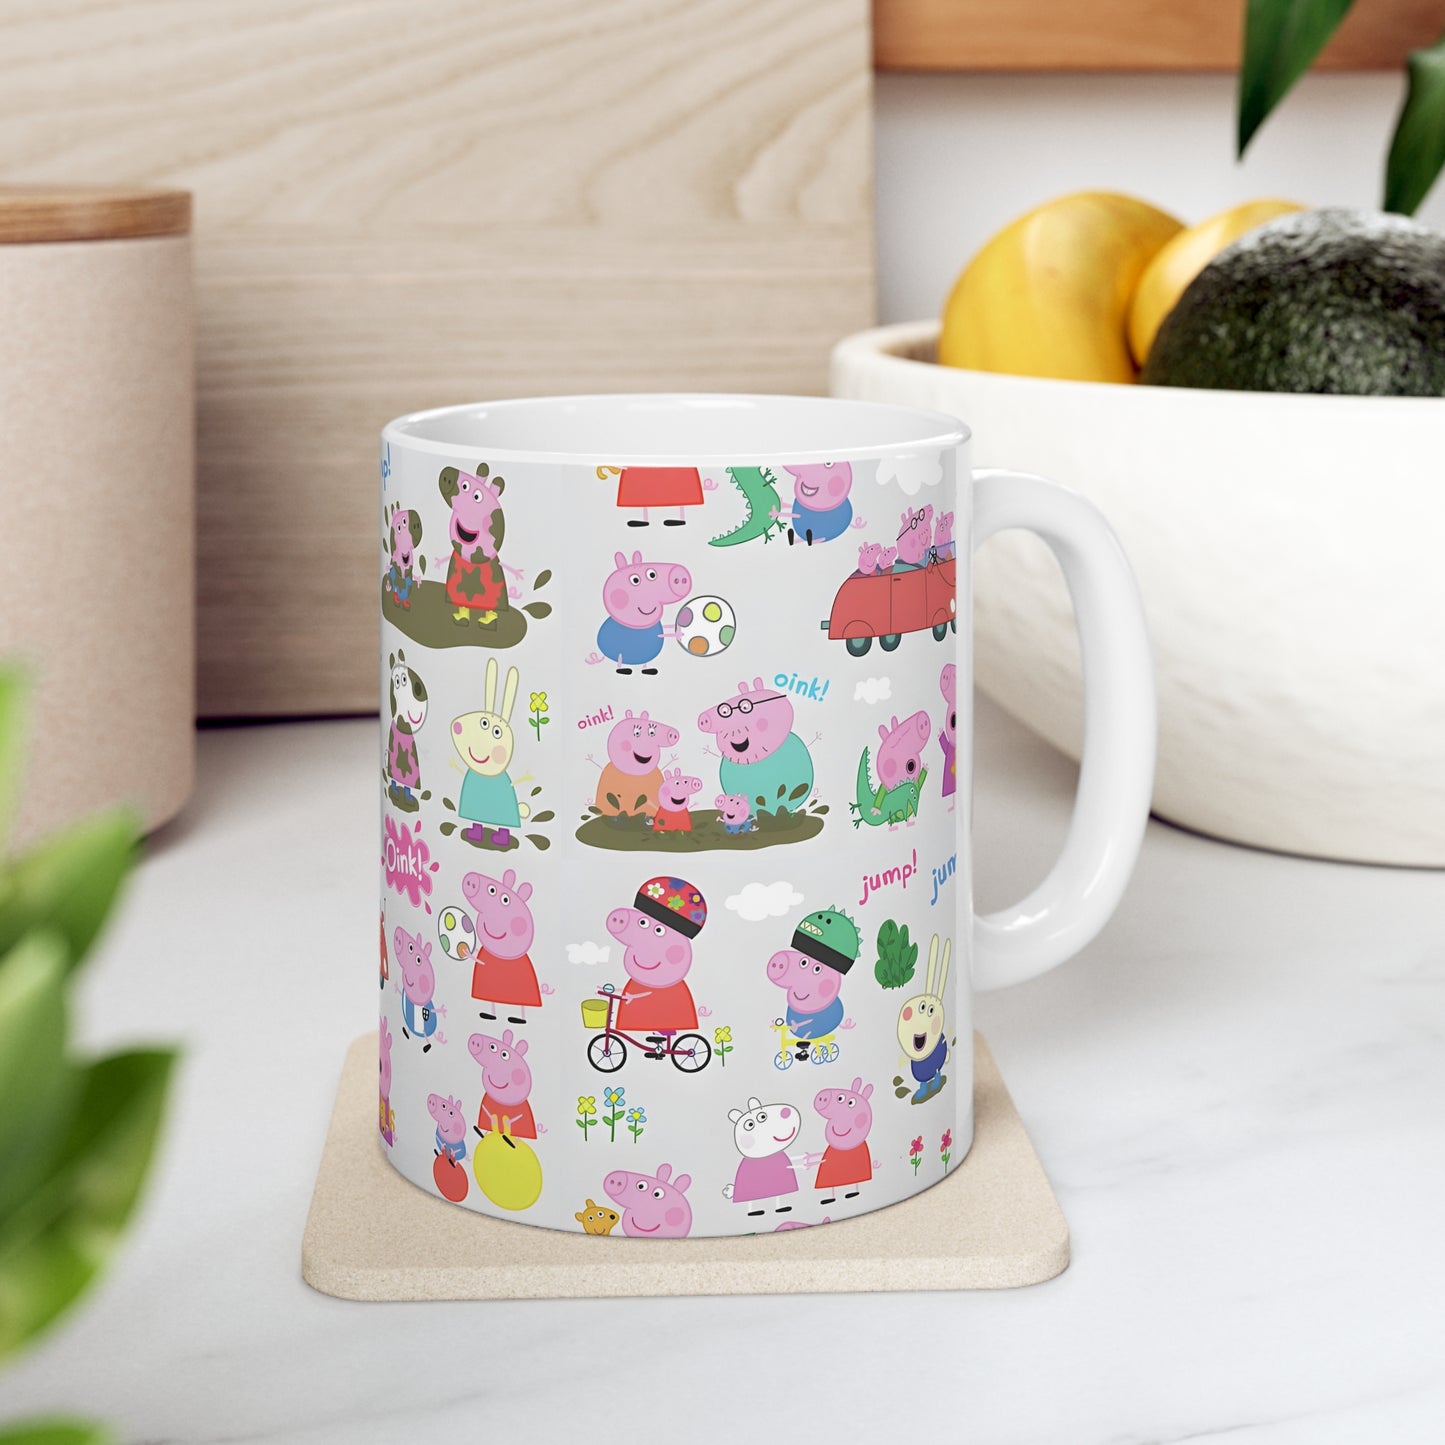 Peppa Pig Oink Oink Collage Ceramic Mug 11oz